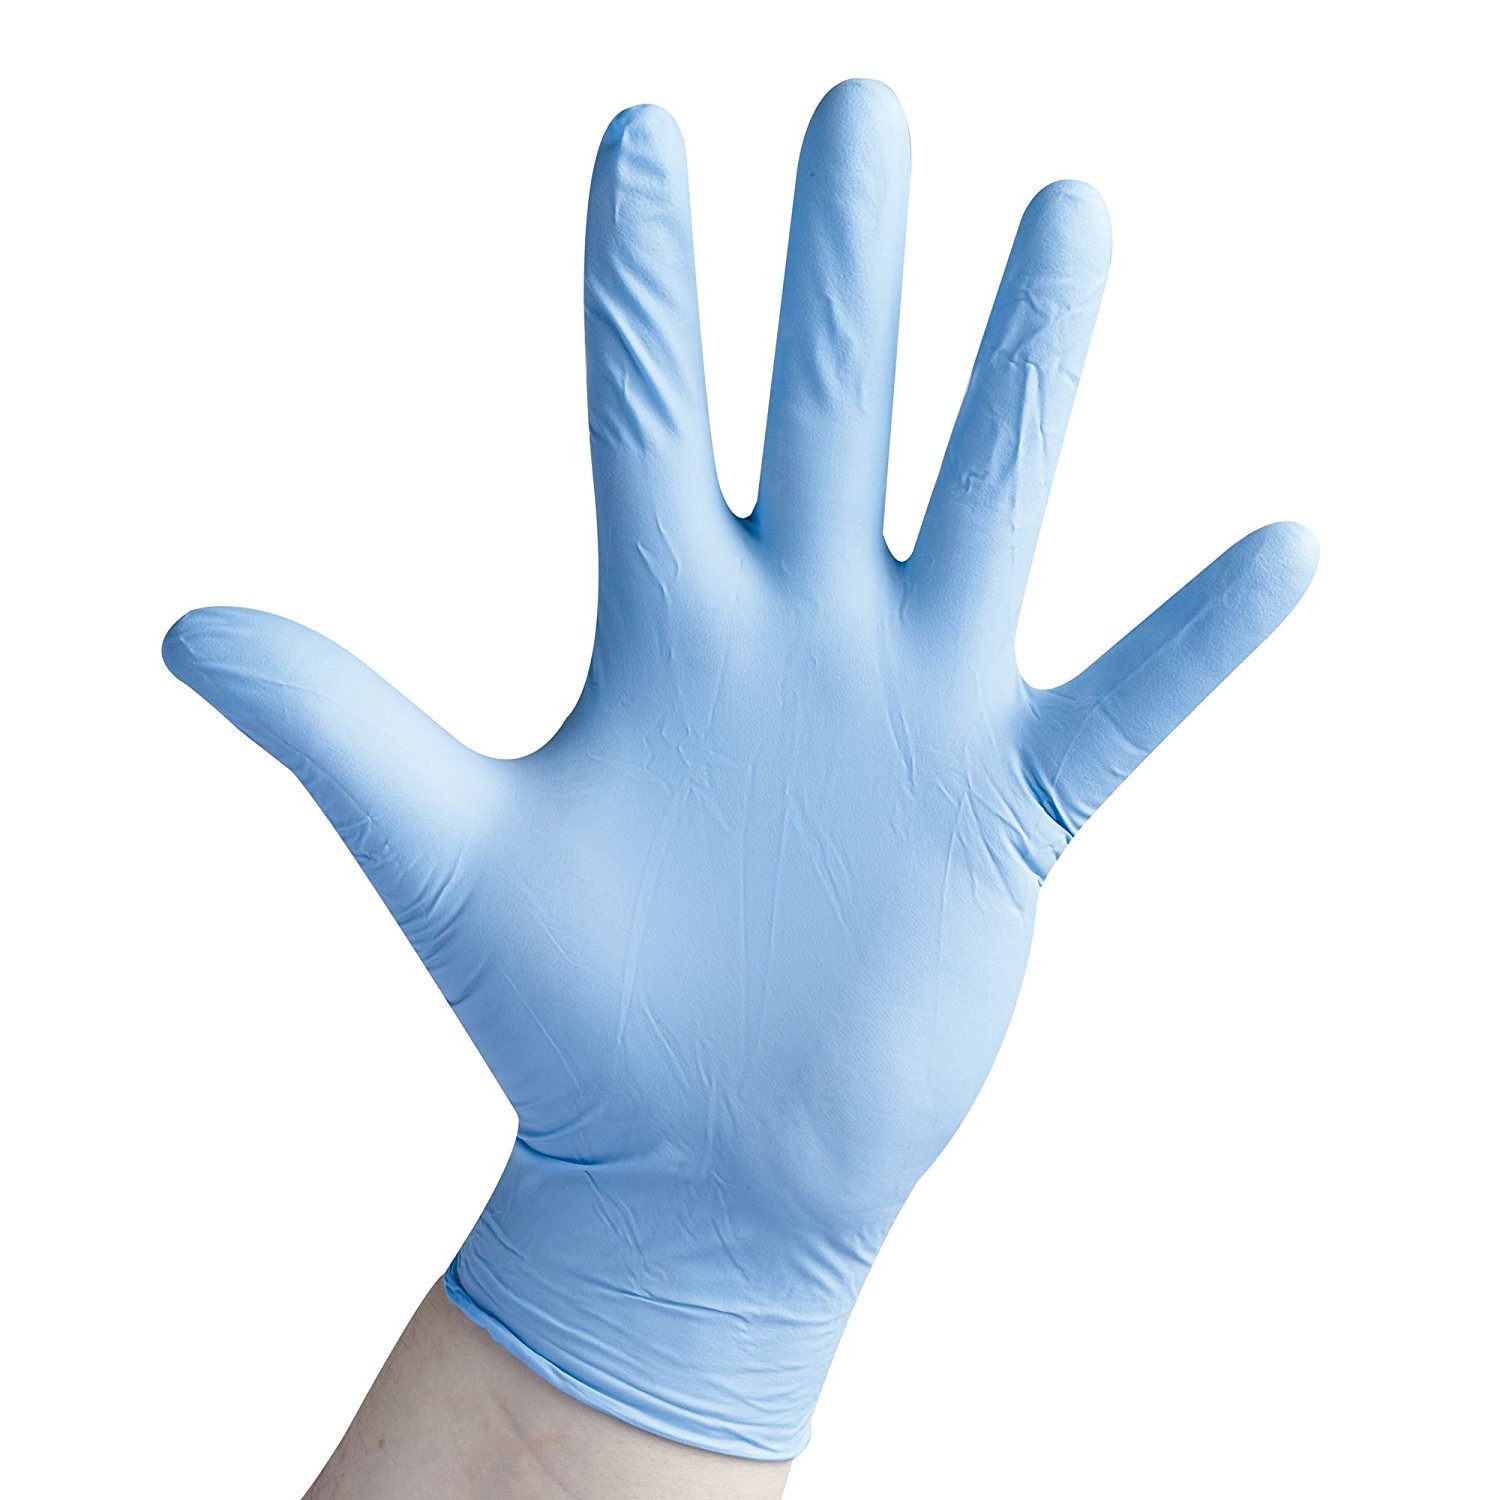 Nitrile Gloves Kentucky